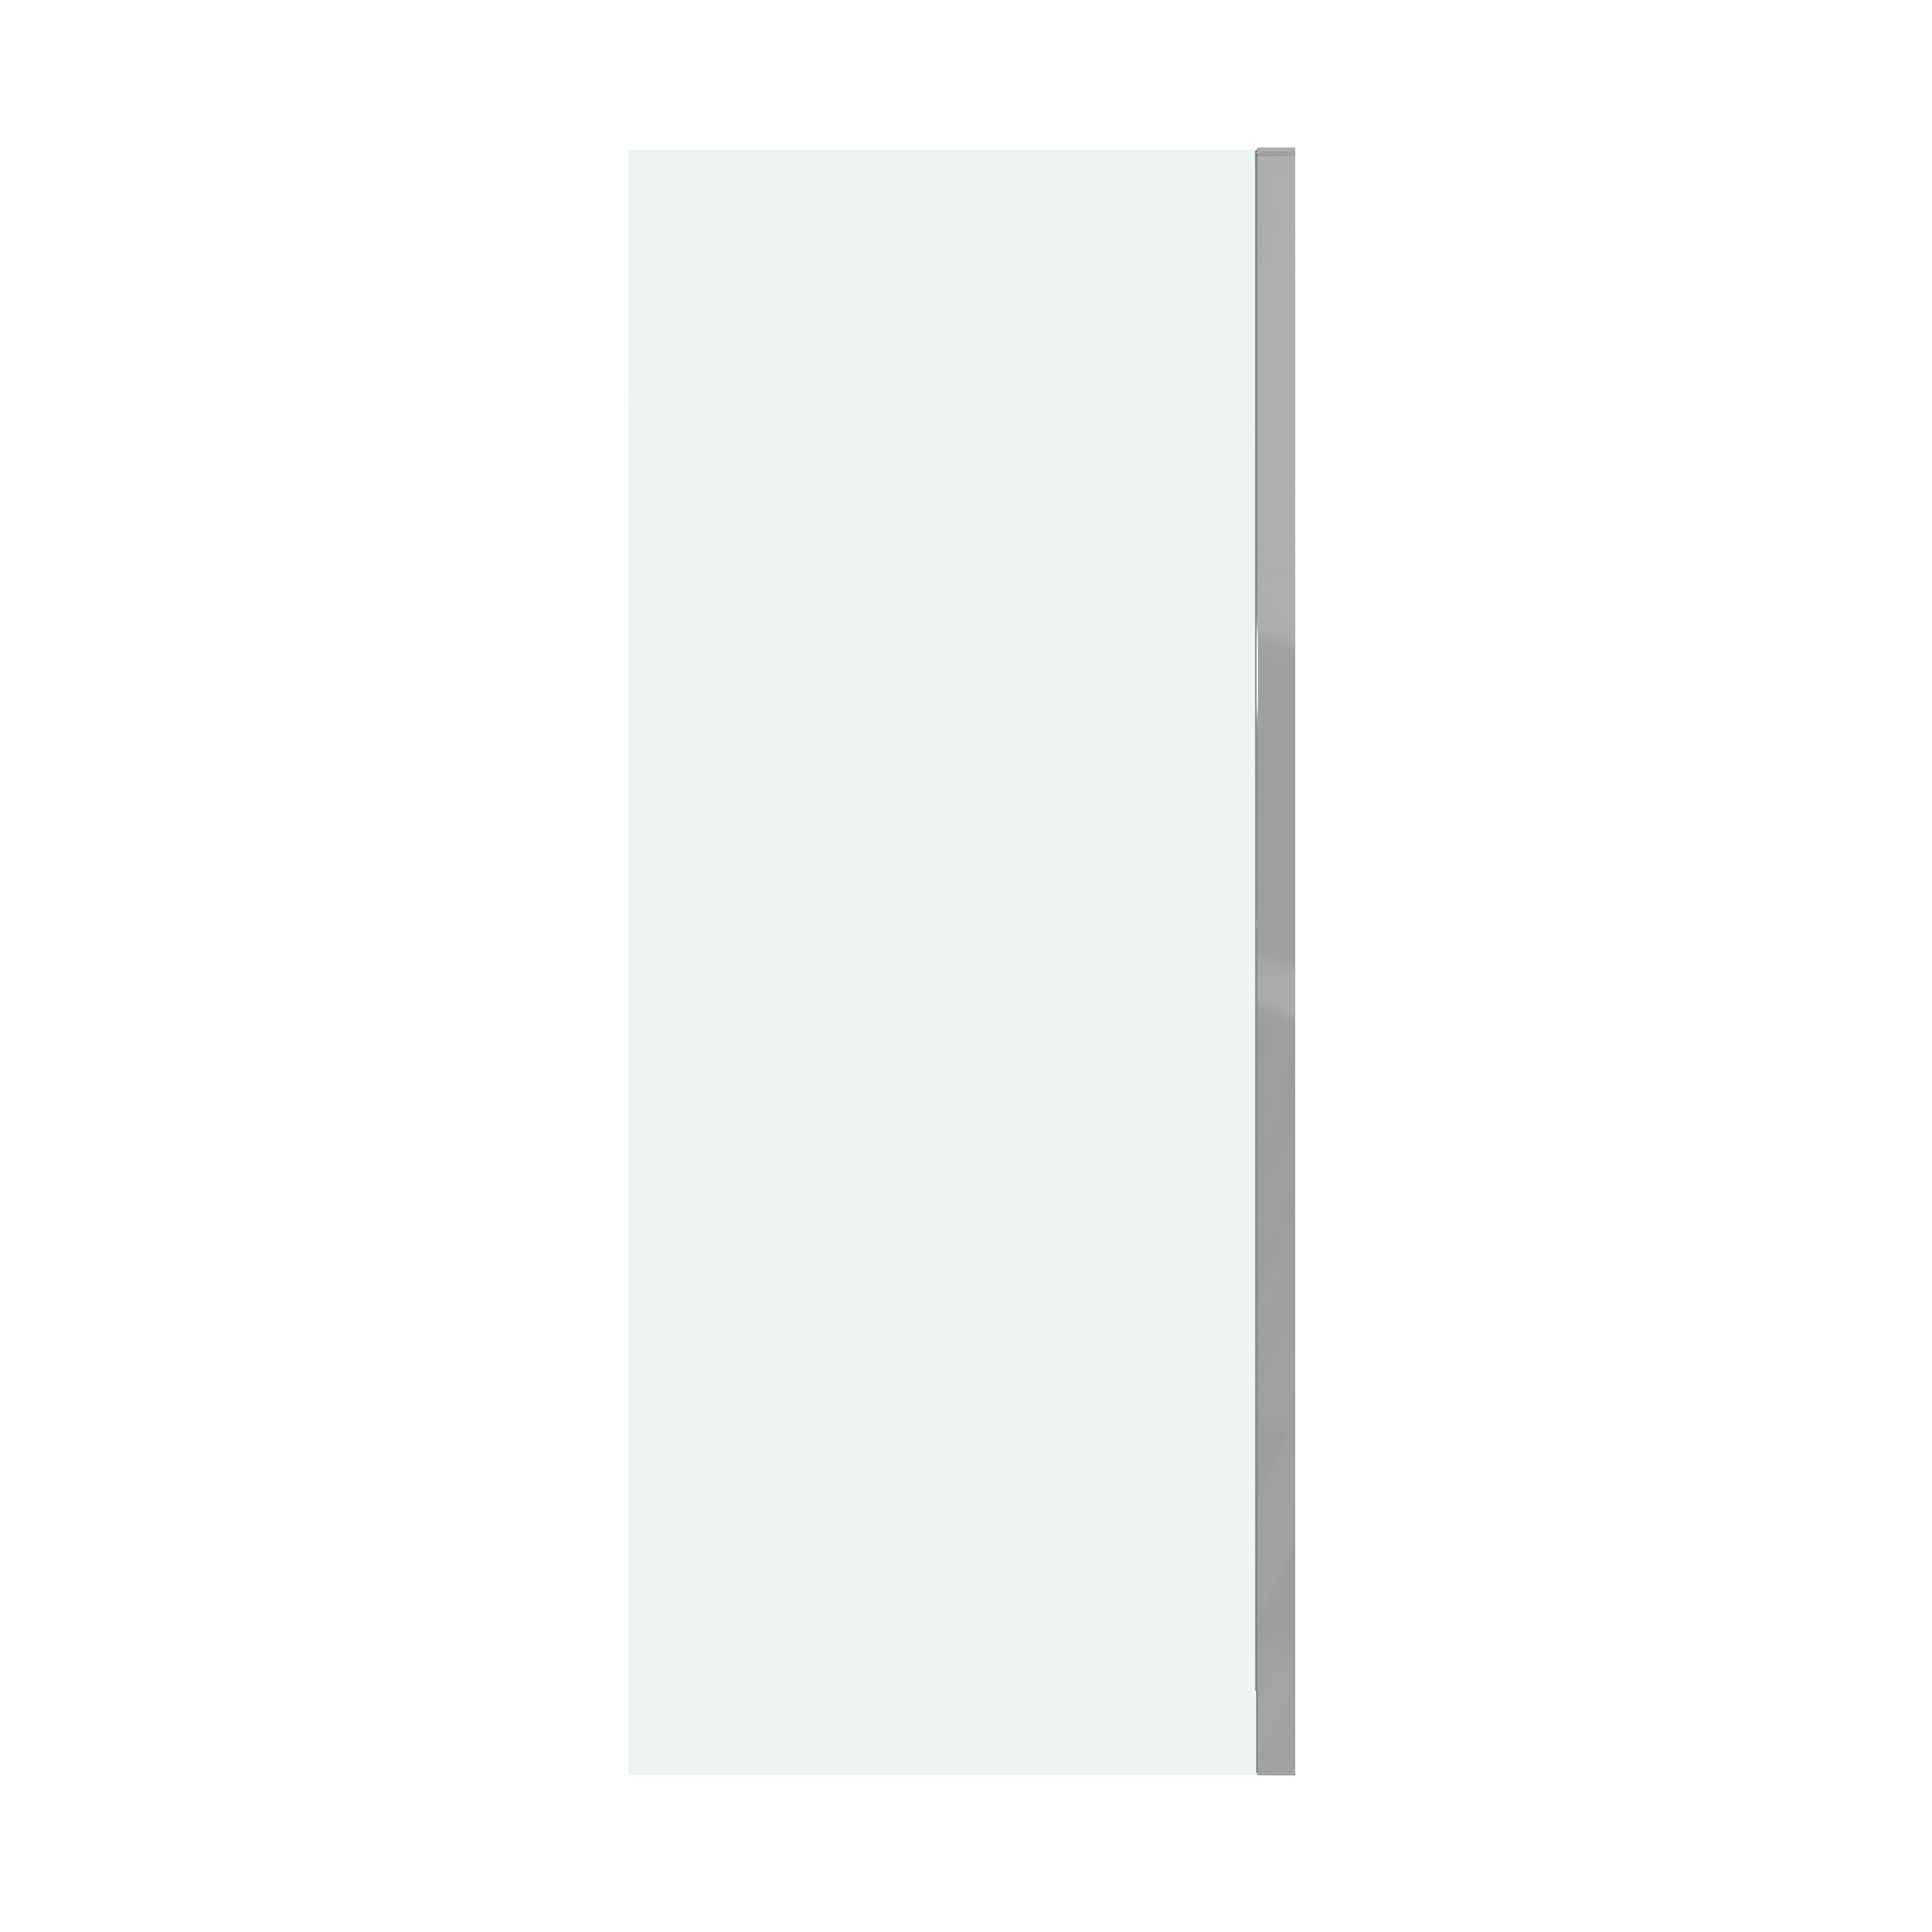 Боковая стенка Grossman Classic 80x195 200.K33.04.80.10.00 стекло прозрачное, профиль хром